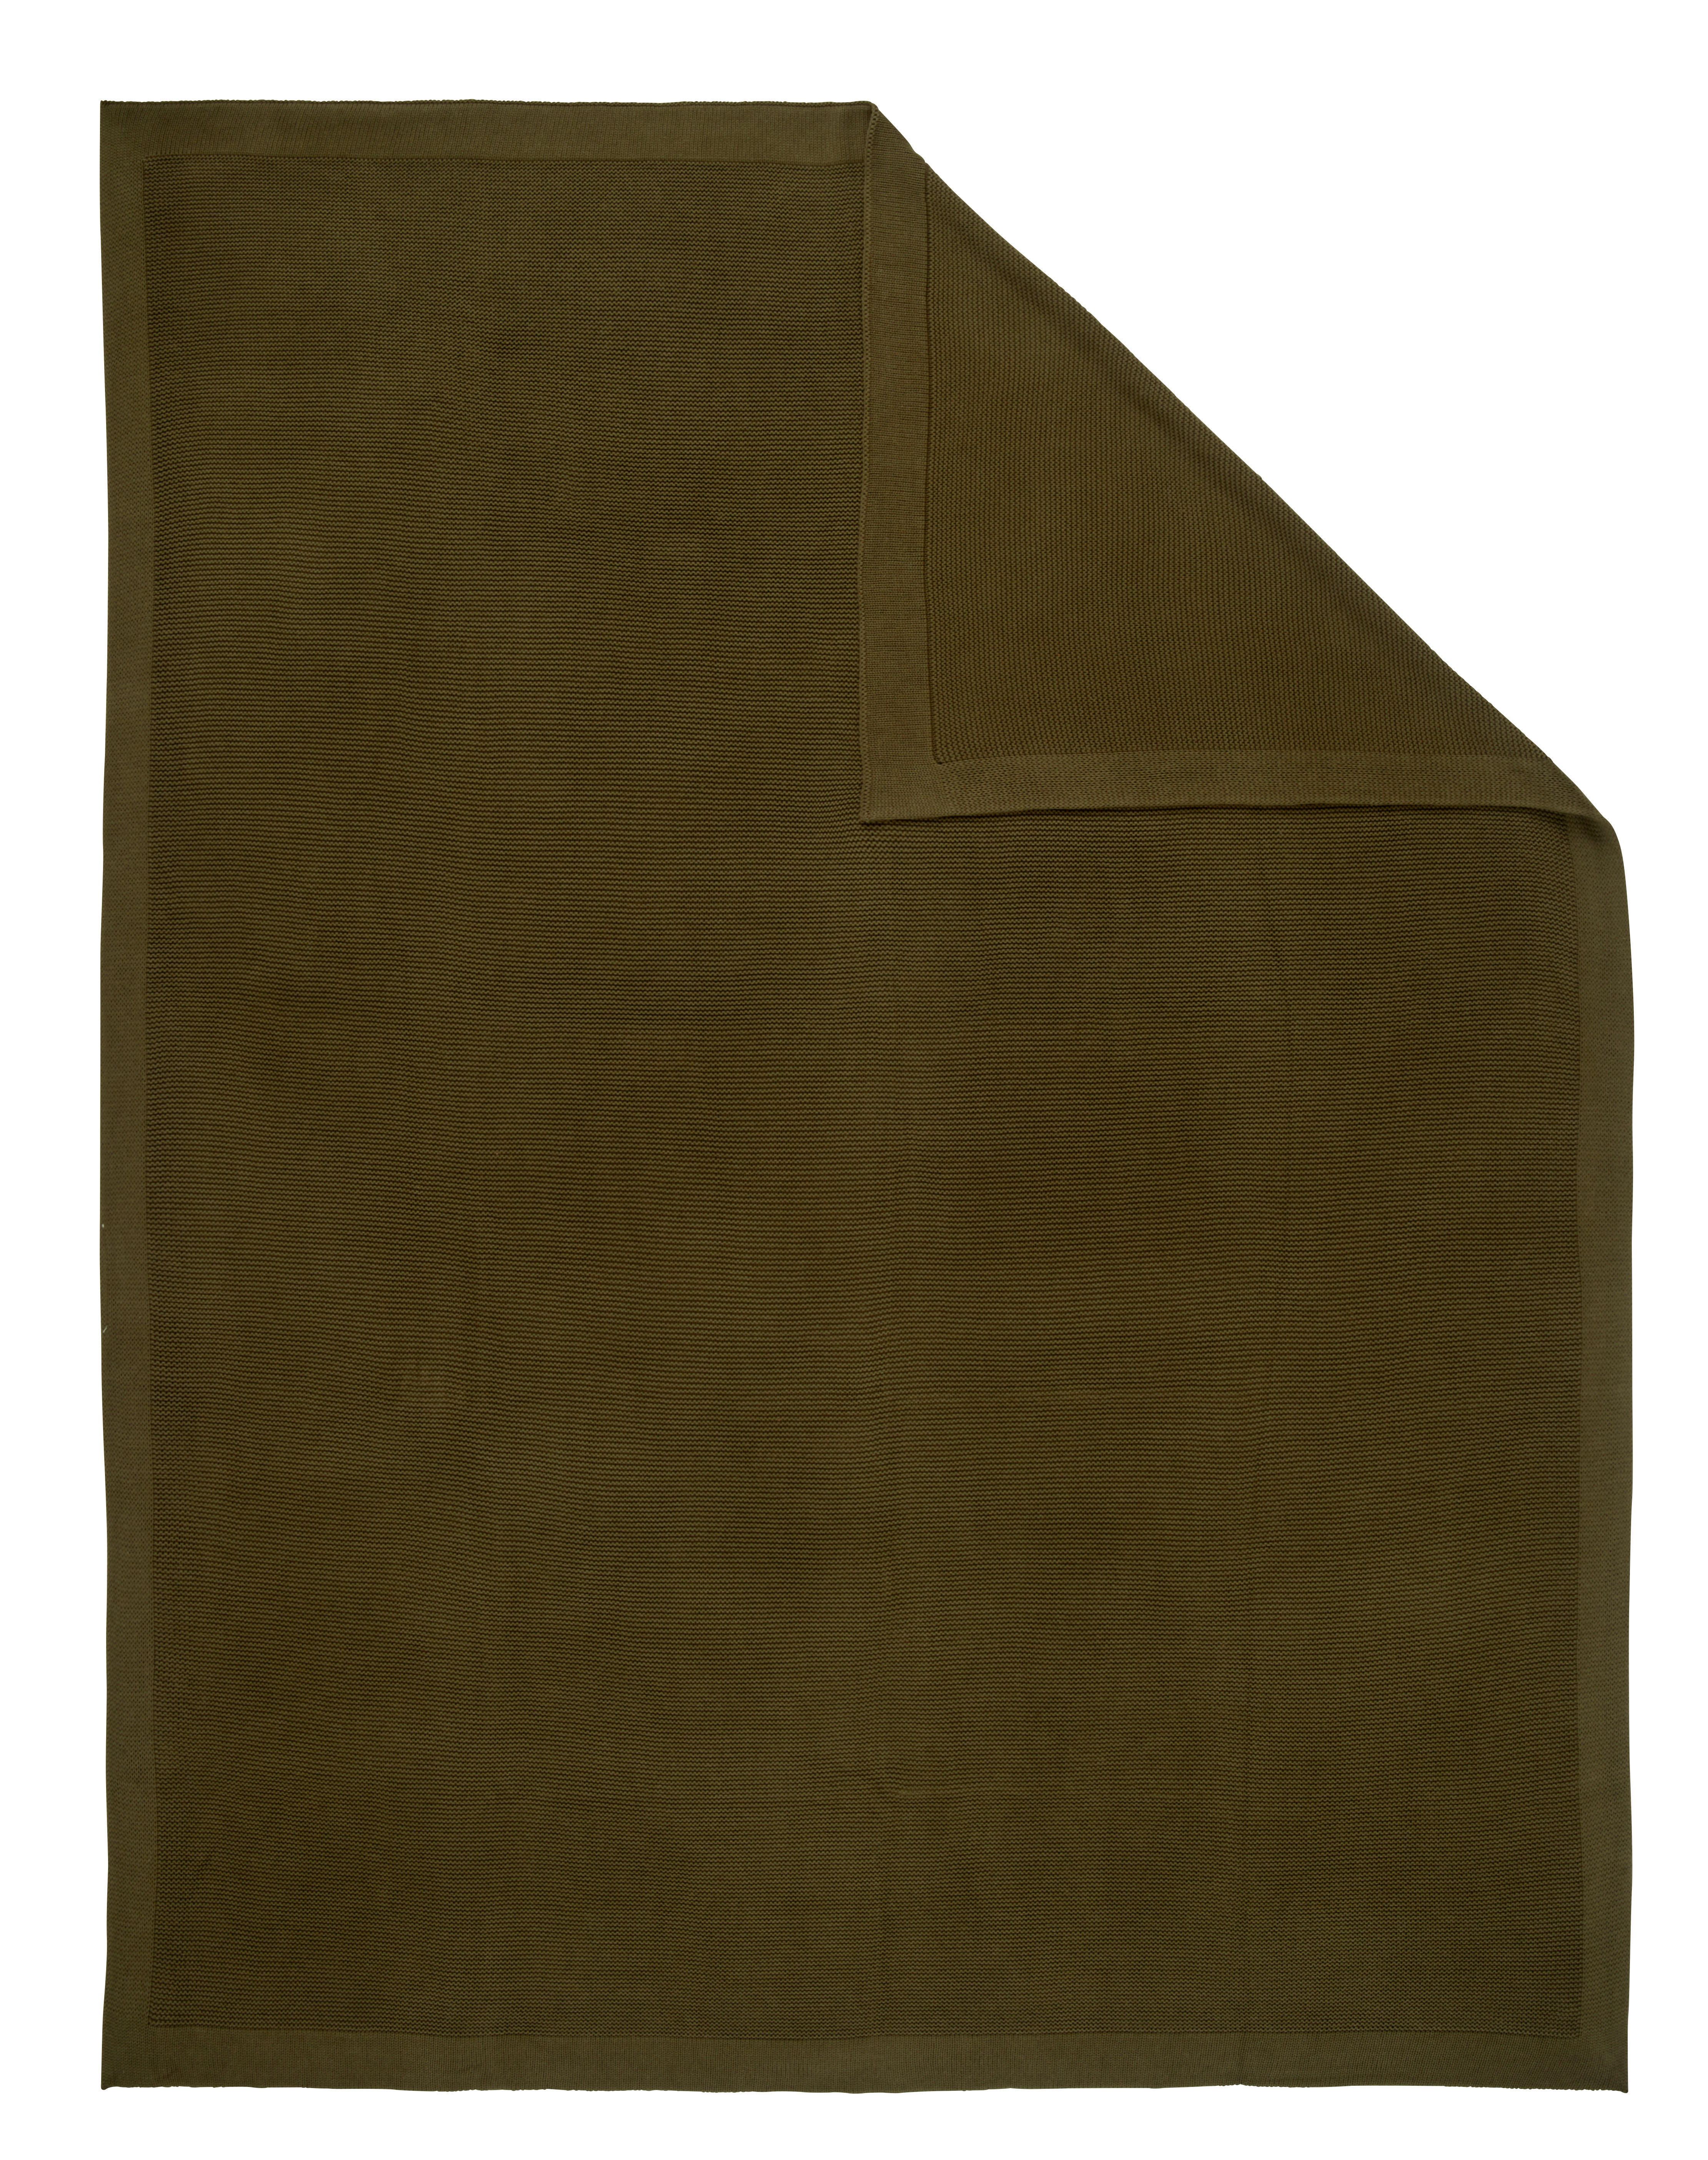 PLAID 130/170 cm  - Olivgrün, Basics, Textil (130/170cm) - Ambiente